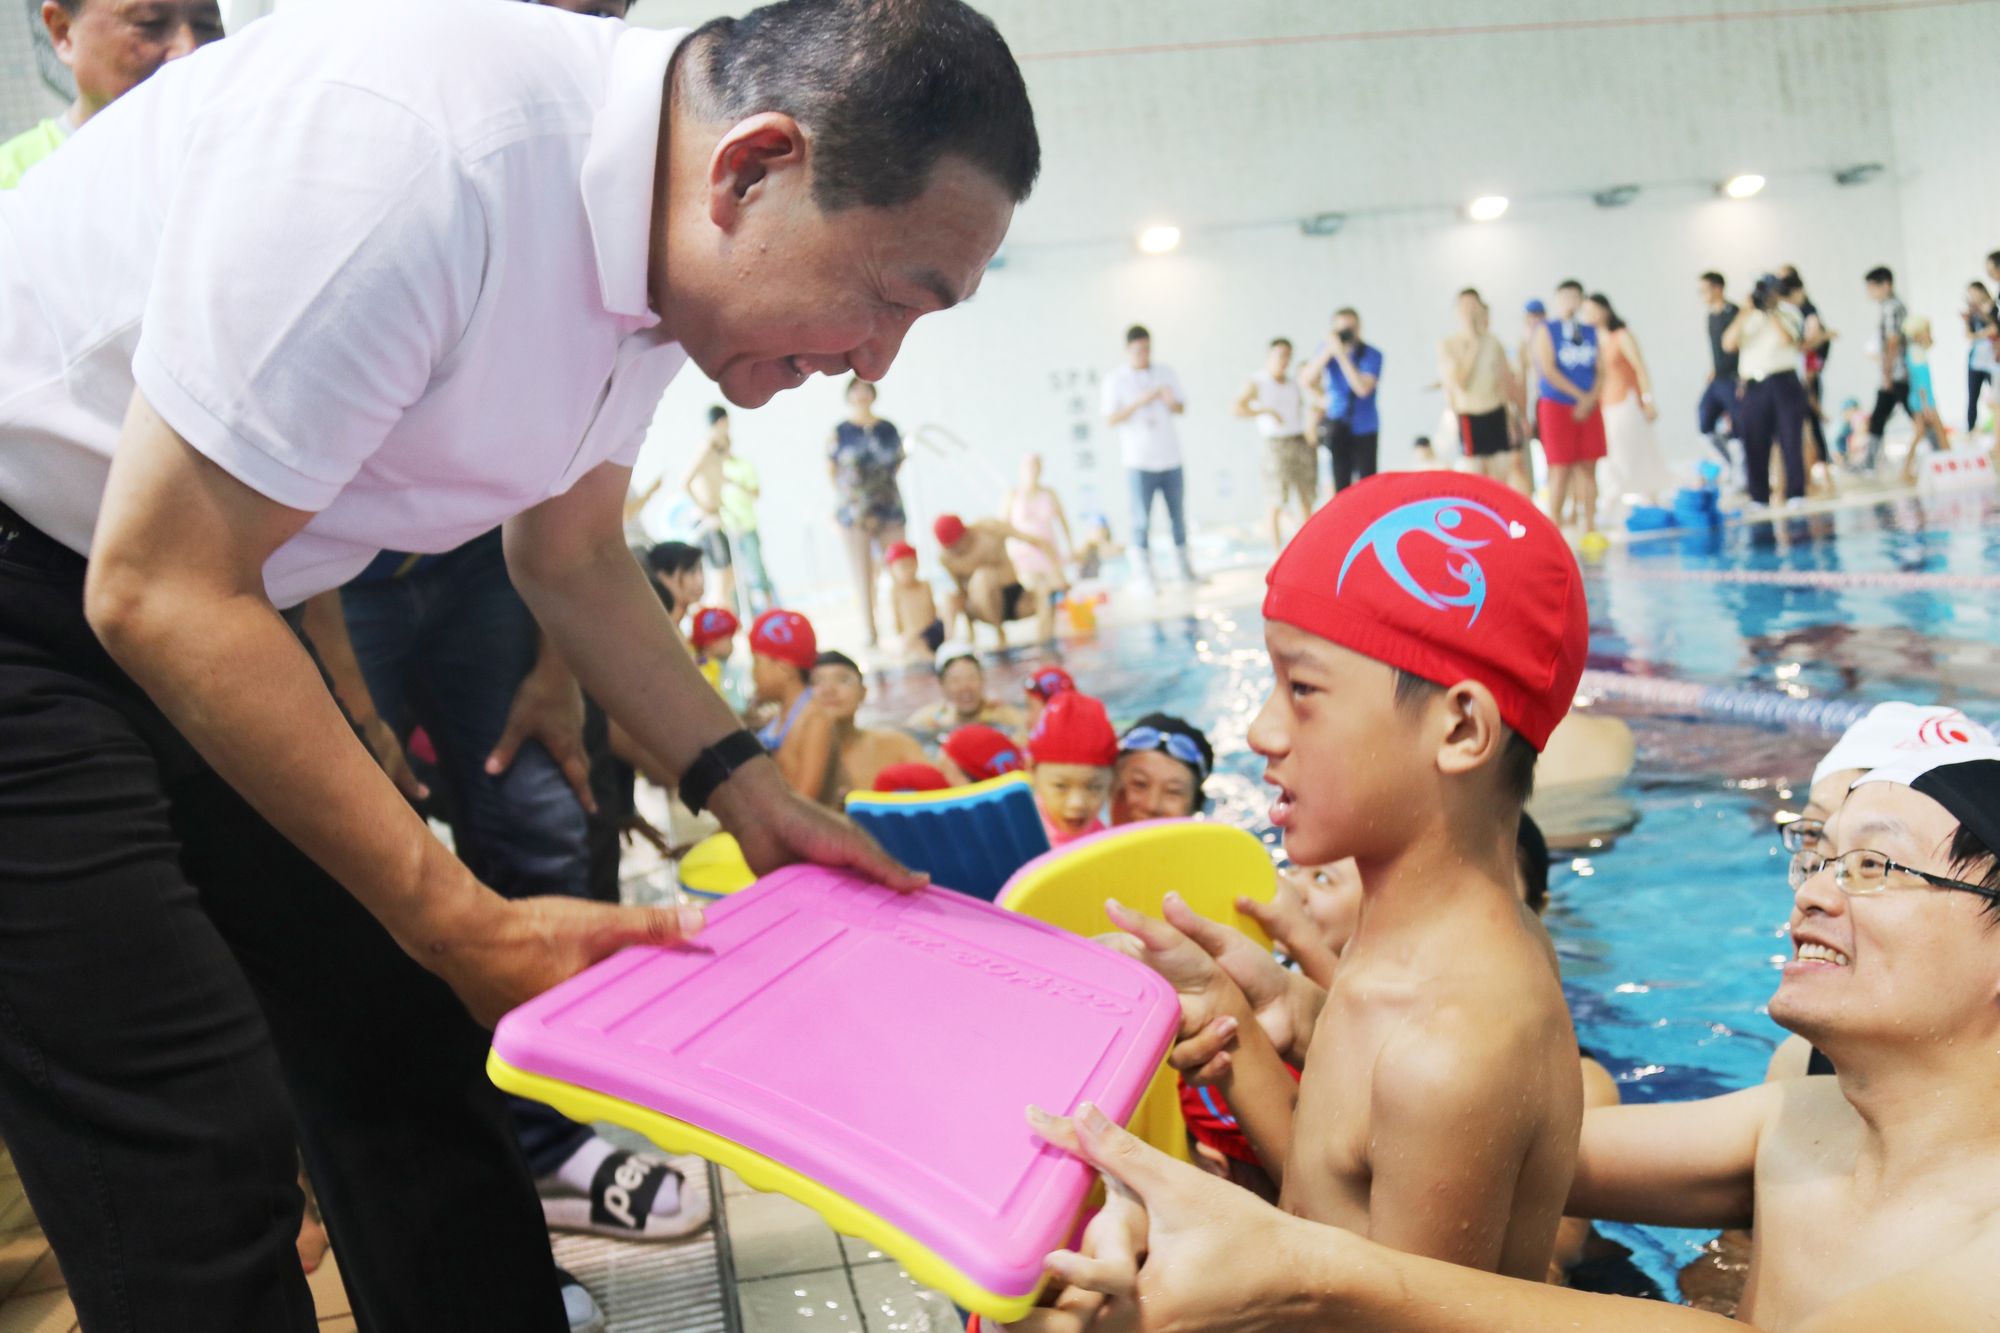 參與式預算辦身心障礙孩童泳課 侯友宜期勉暢游生活泳抱健康